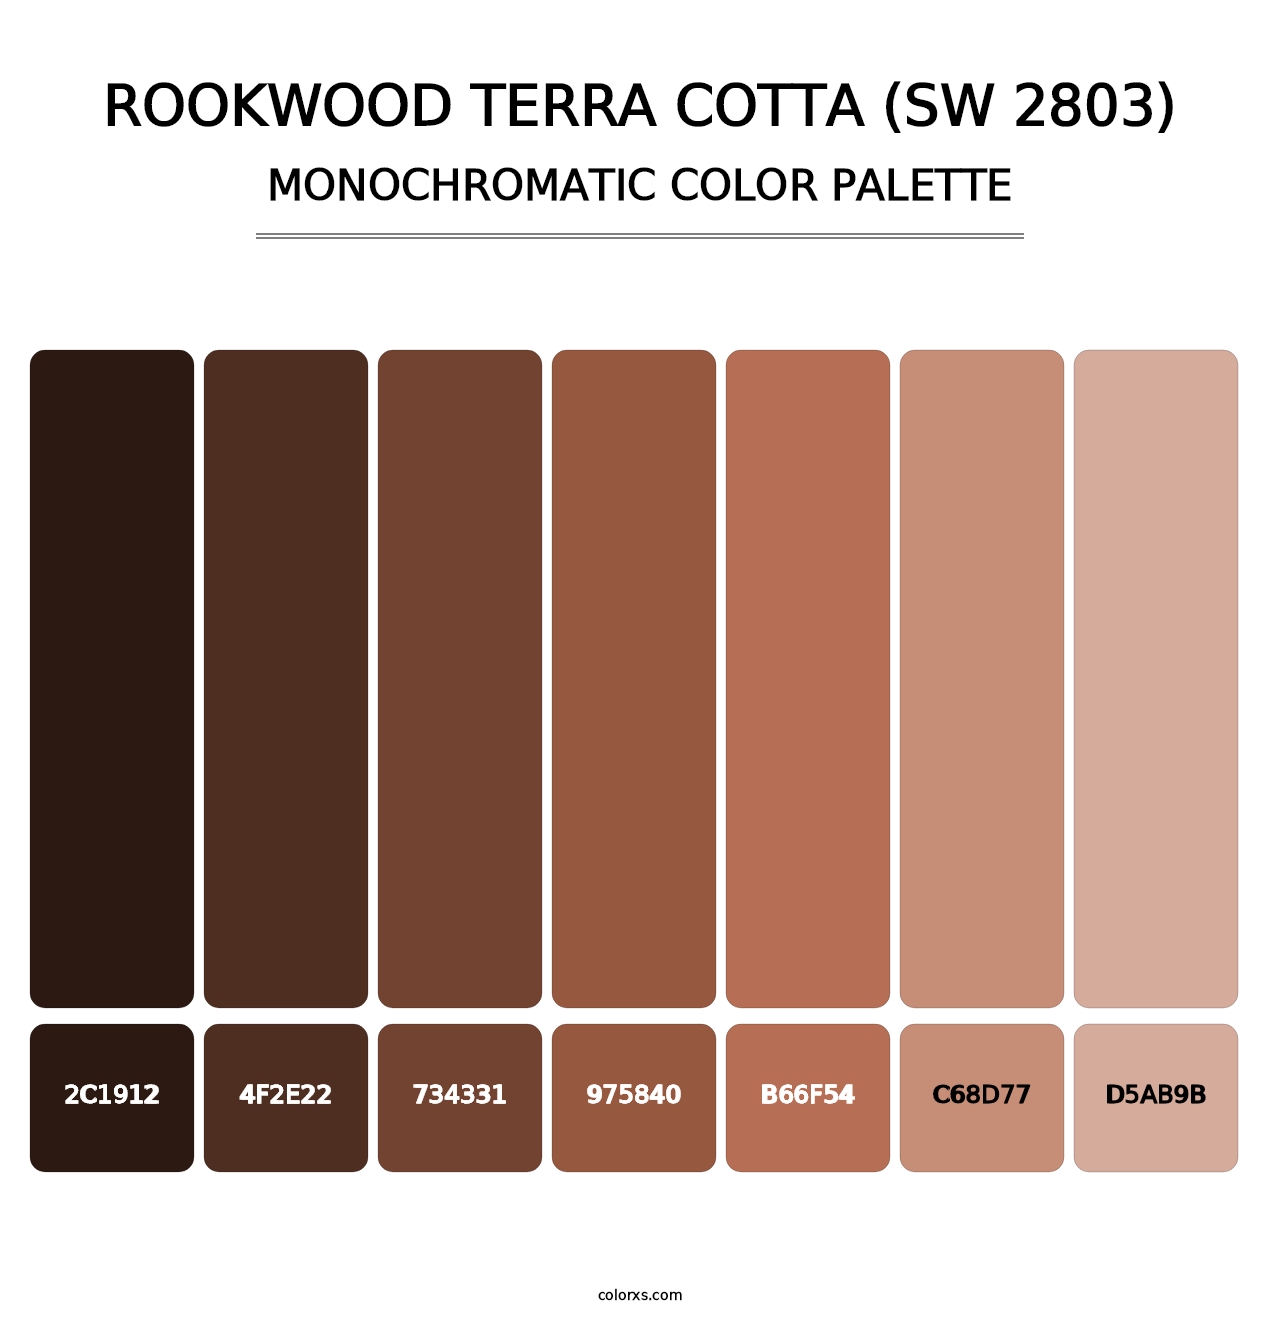 Rookwood Terra Cotta (SW 2803) - Monochromatic Color Palette